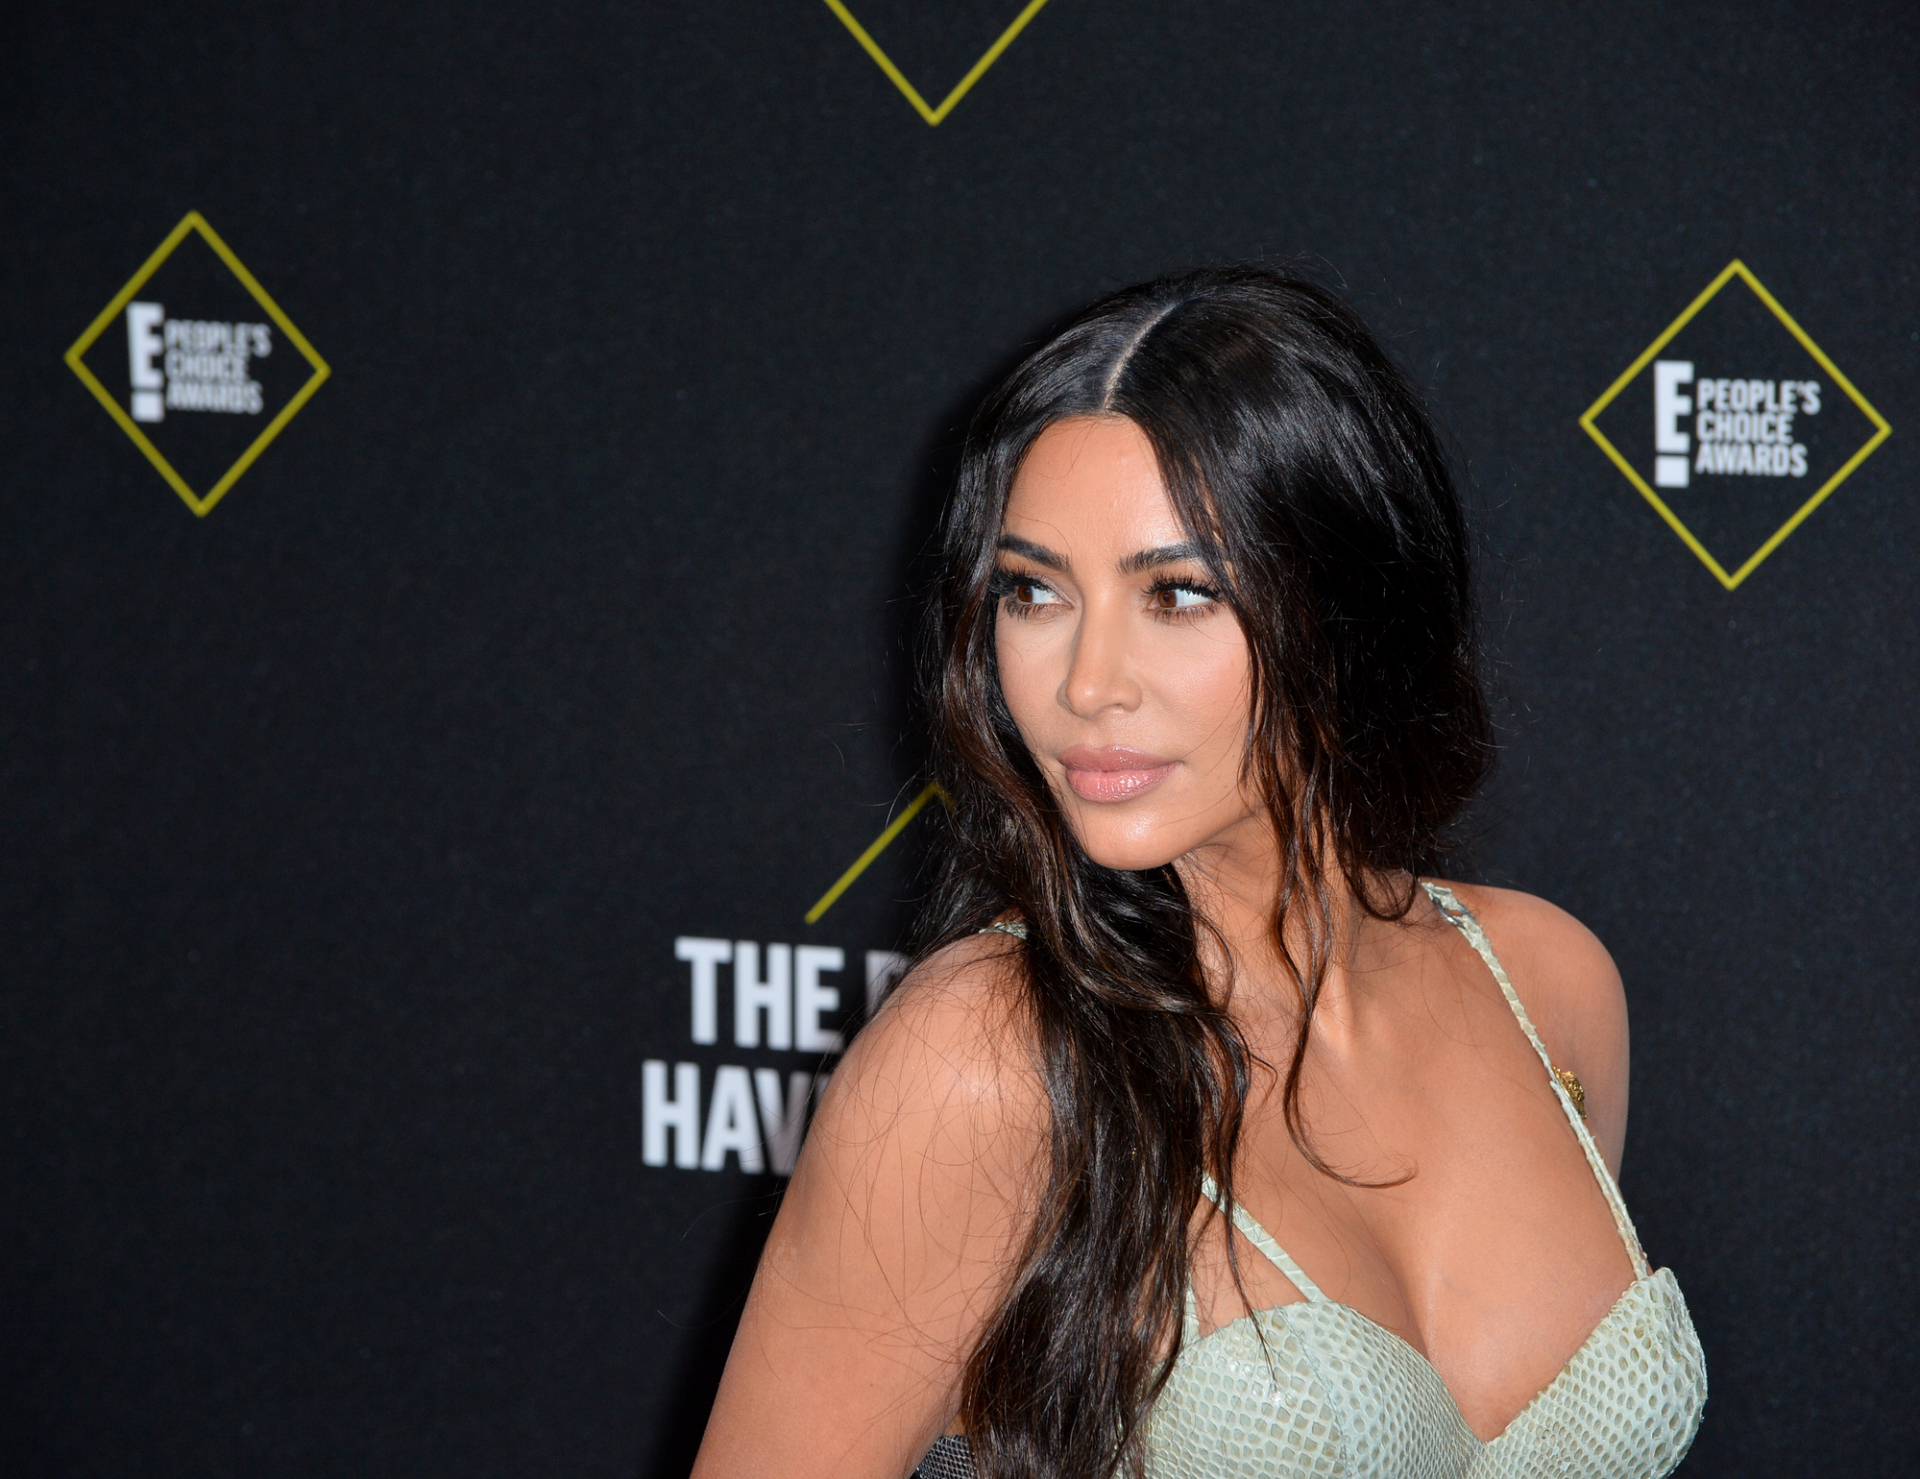 Kim Kardashian mégsem áll készen a randevúzásra